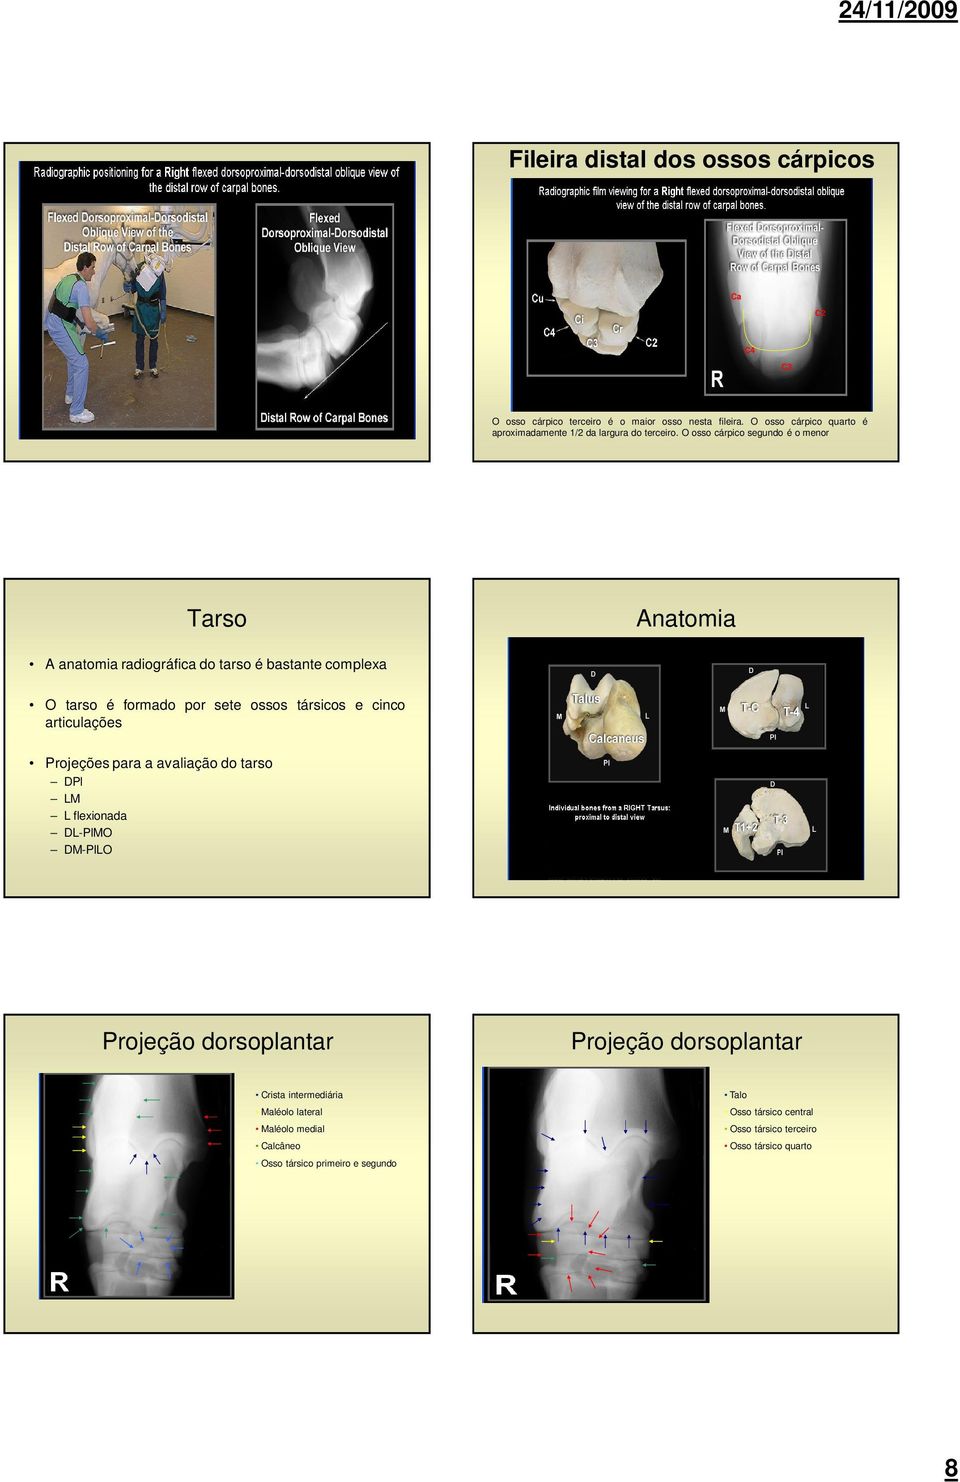 O osso cárpico segundo é o menor Tarso Anatomia A anatomia radiográfica do tarso é bastante complexa O tarso é formado por sete ossos társicos e cinco